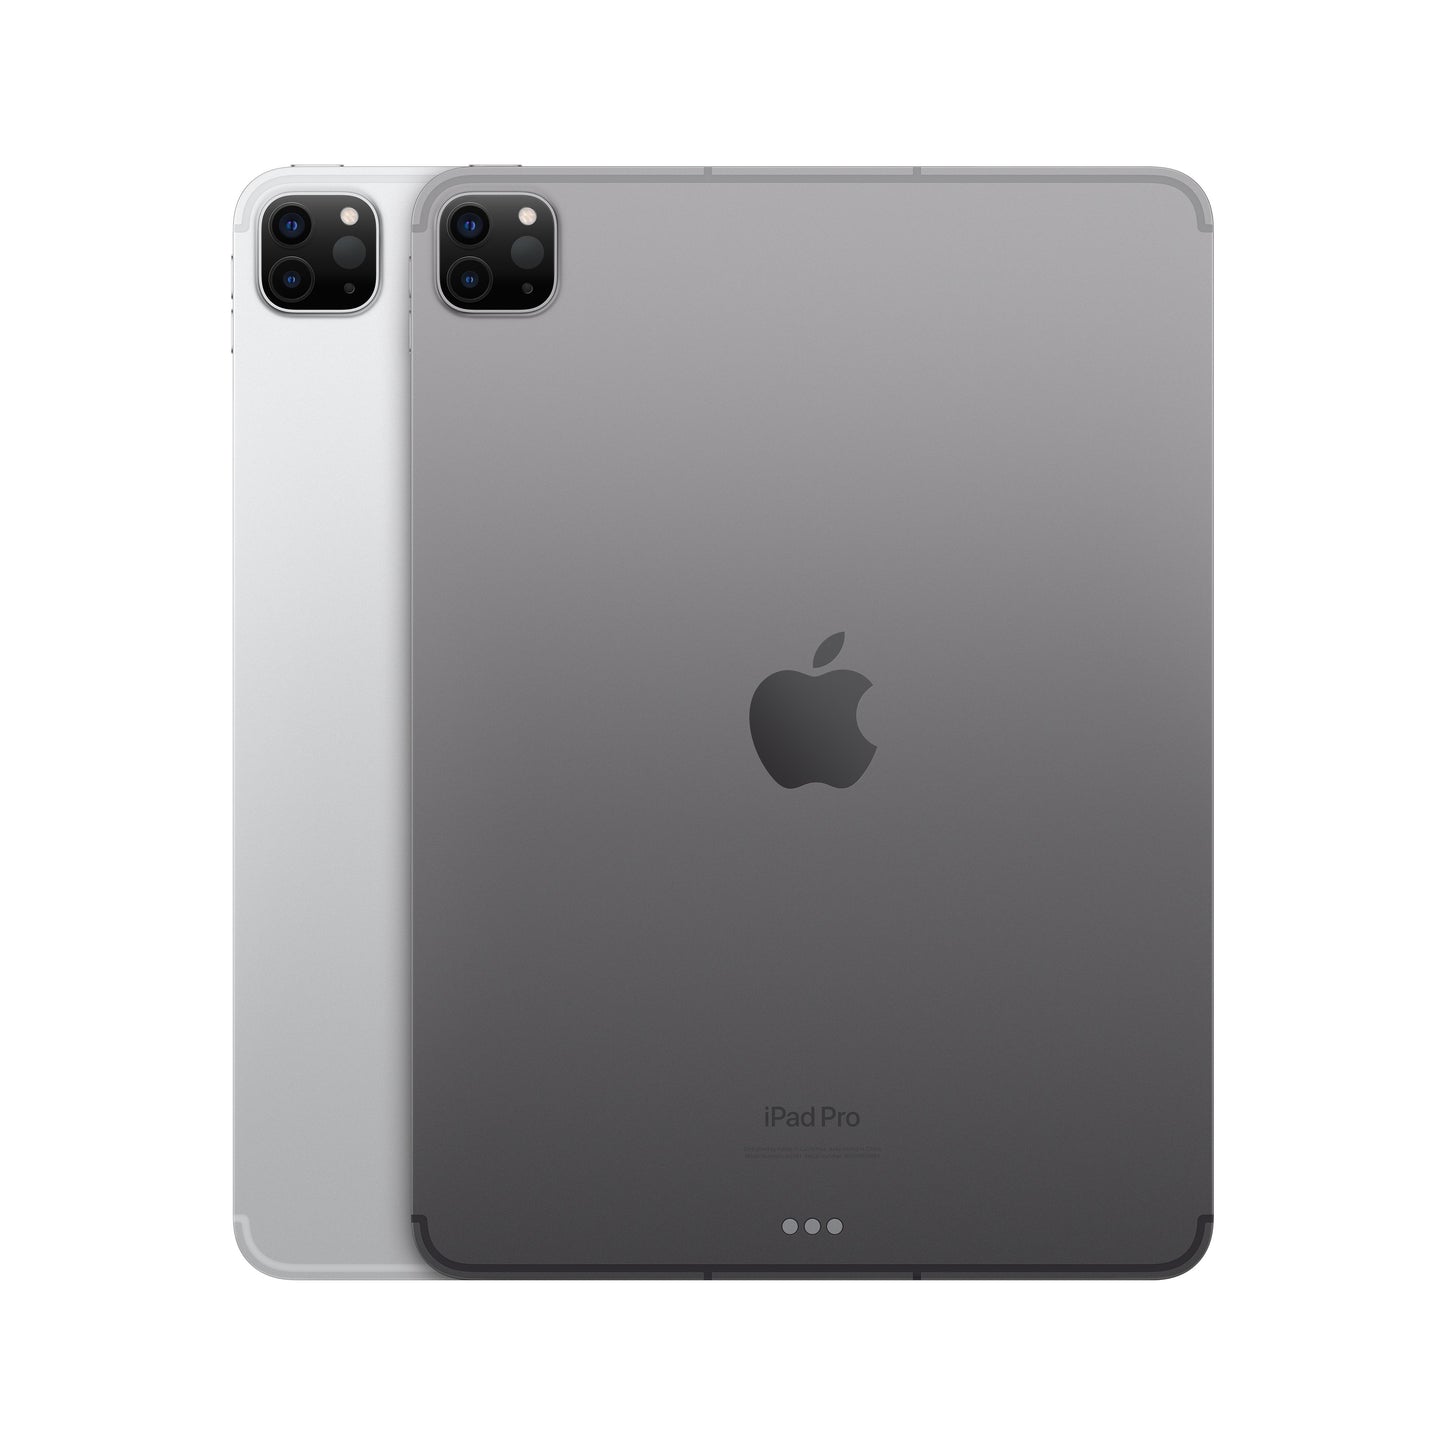 11-inch iPad Pro (4th Gen) Wi-Fi + Cellular 512GB - Space Grey